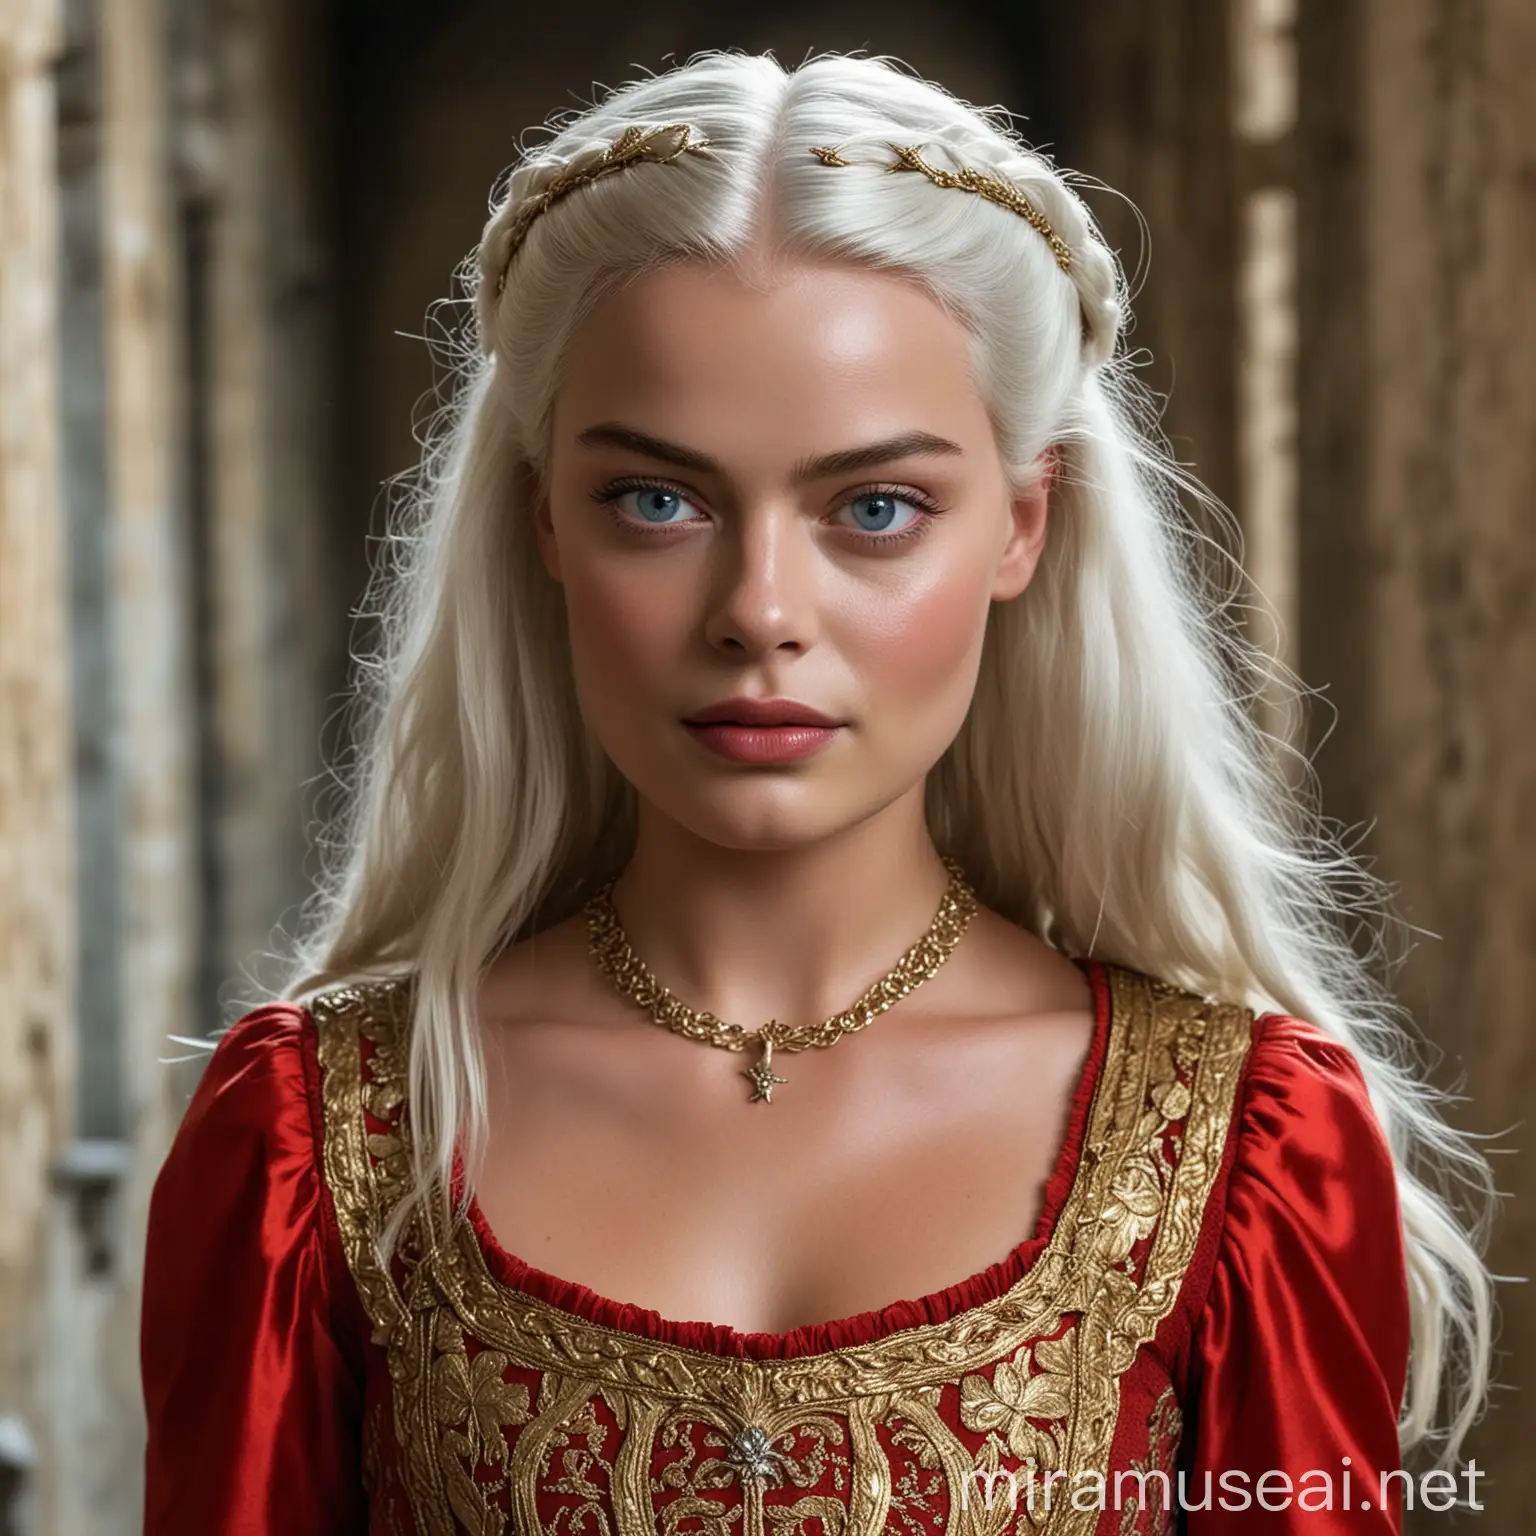 Margot Robbie en tant que princesse de 10 ans de la Maison Targaryen de l'Ancienne Valyria aux yeux clairs avec de longs cheveux blancs-argentés détachés, portant une robe rouge et dorée, se baladant dans les couloirs d'un château